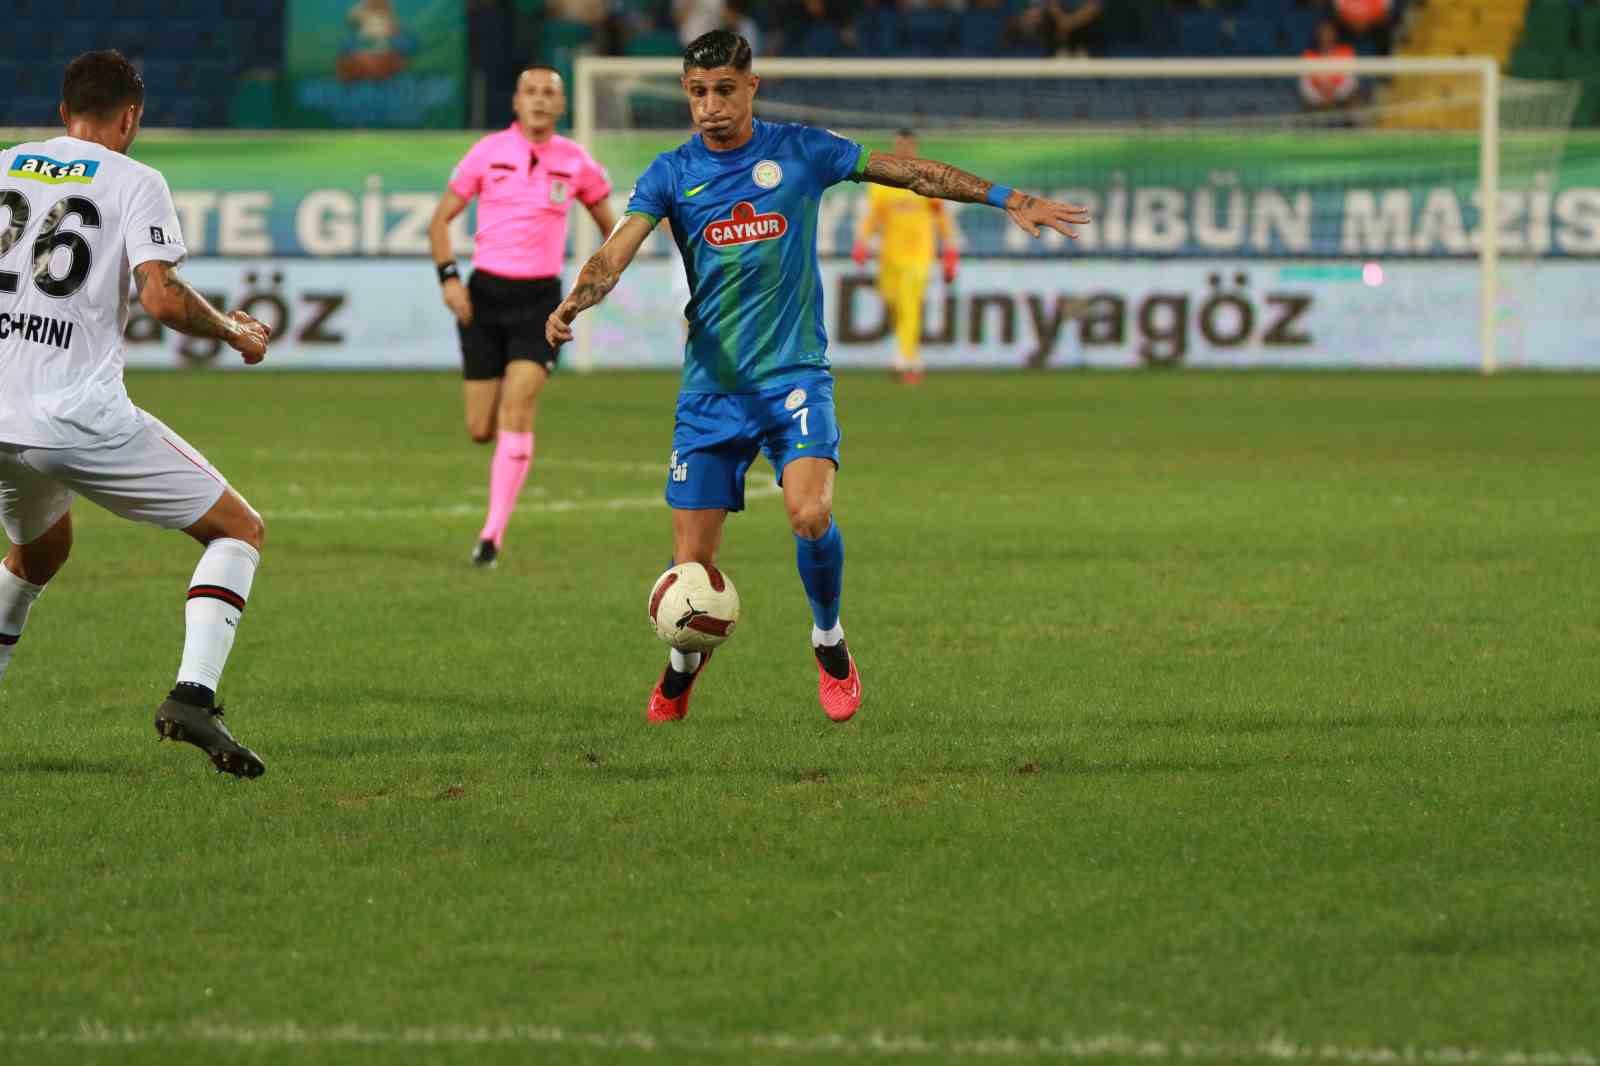 Trendyol Süper Lig: Çaykur Rizespor: 1 - Fatih Karagümrük: 0 (İlk yarı)